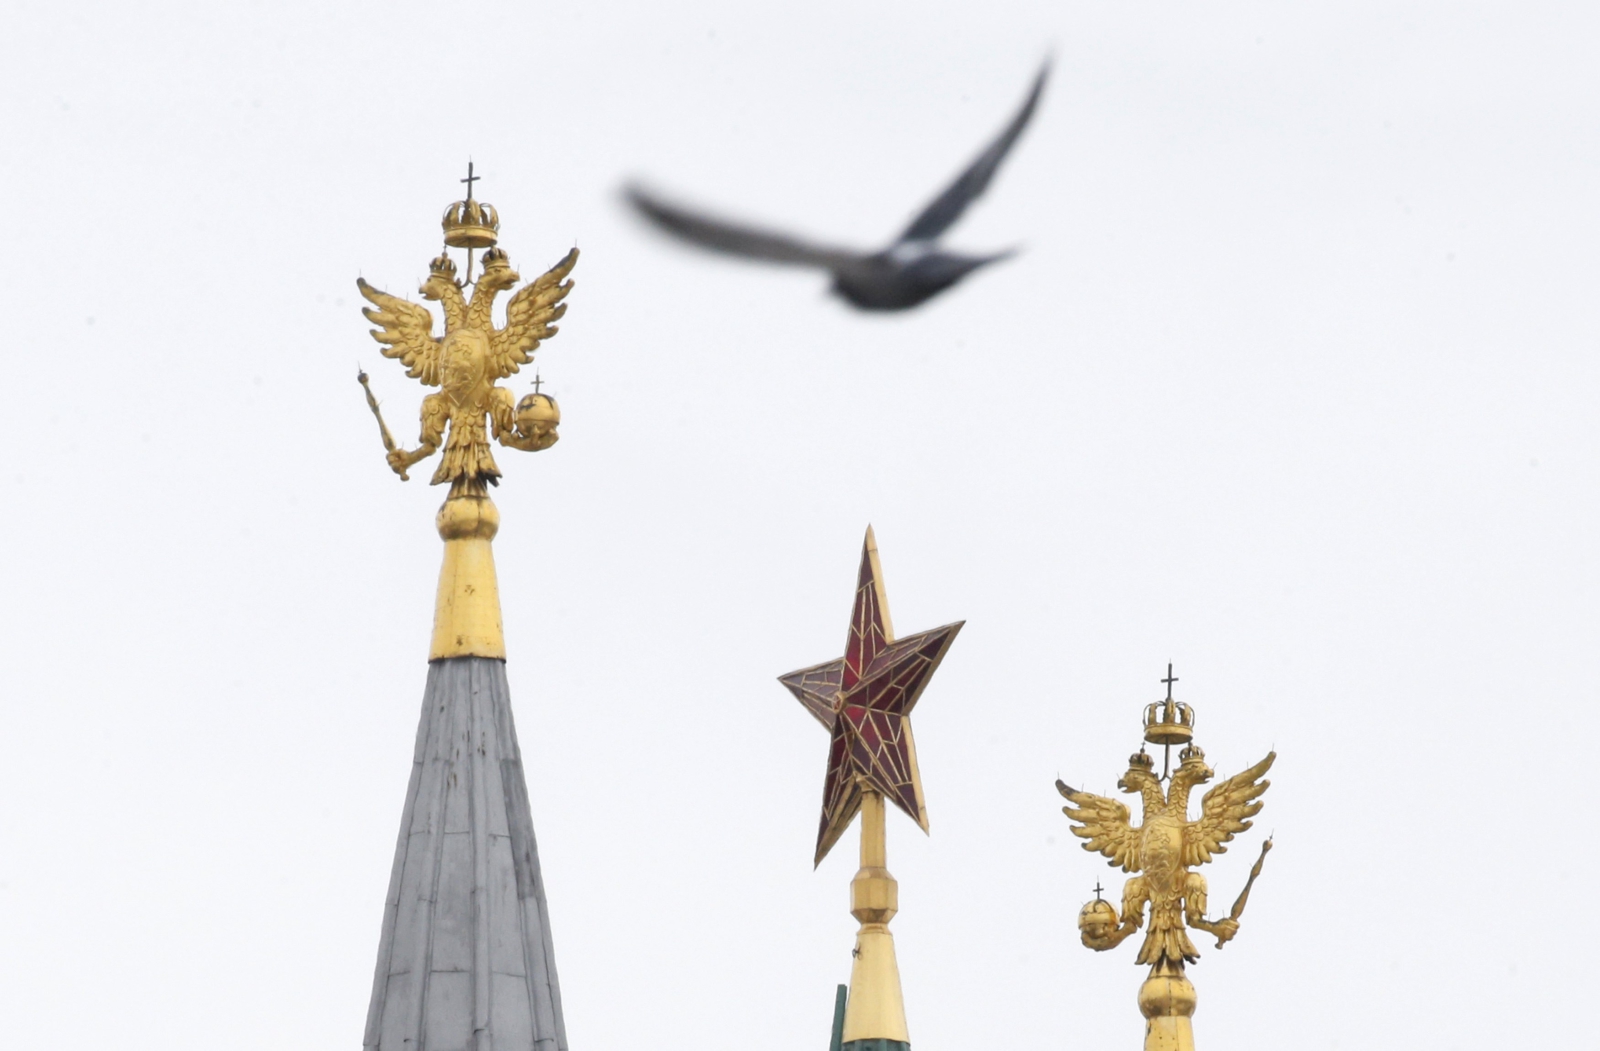 Ptak przelatuje niedaleko wież Kremla.